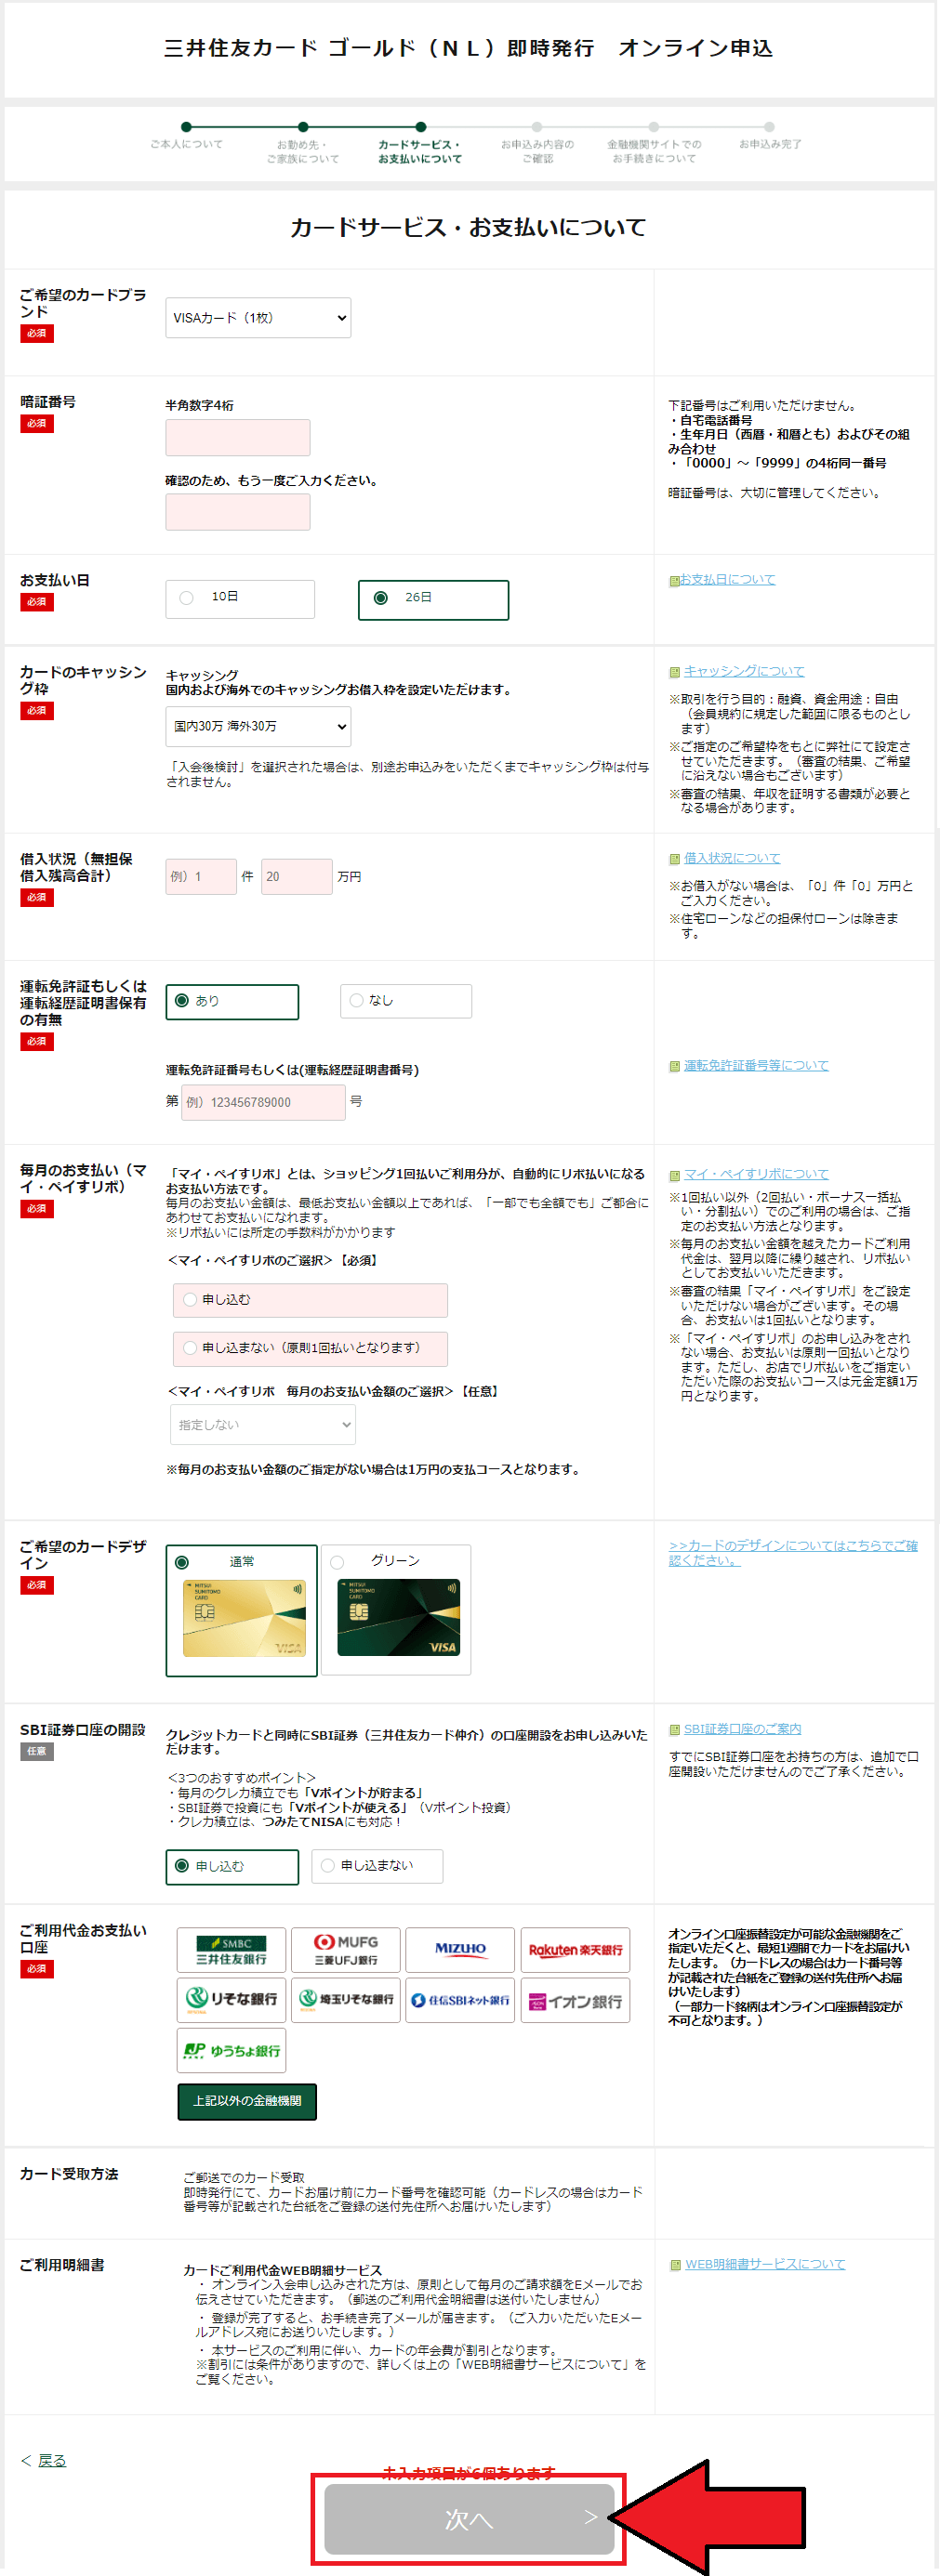 三井住友カード (NL)の即時発行申込